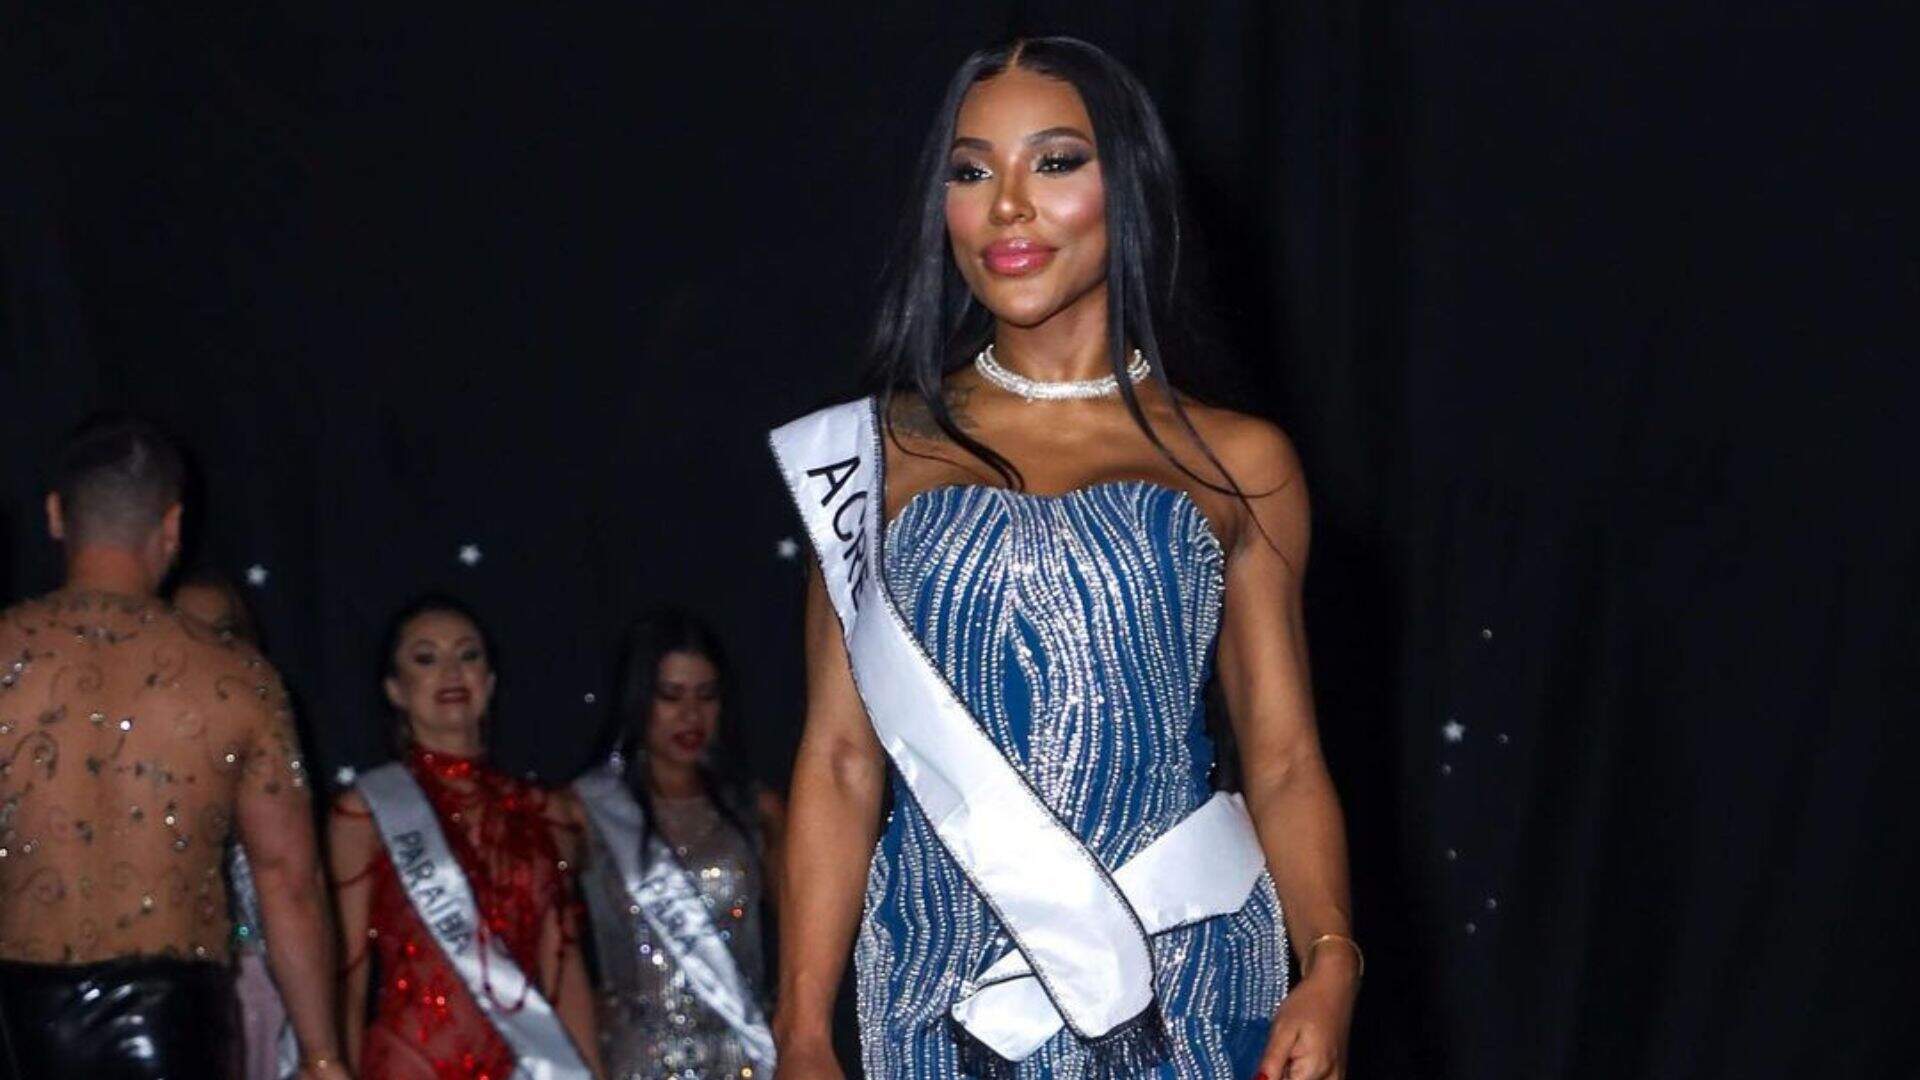 Candidata ao Miss Bumbum que faz “dieta do sexo”, vence o concurso - Metropolitana FM